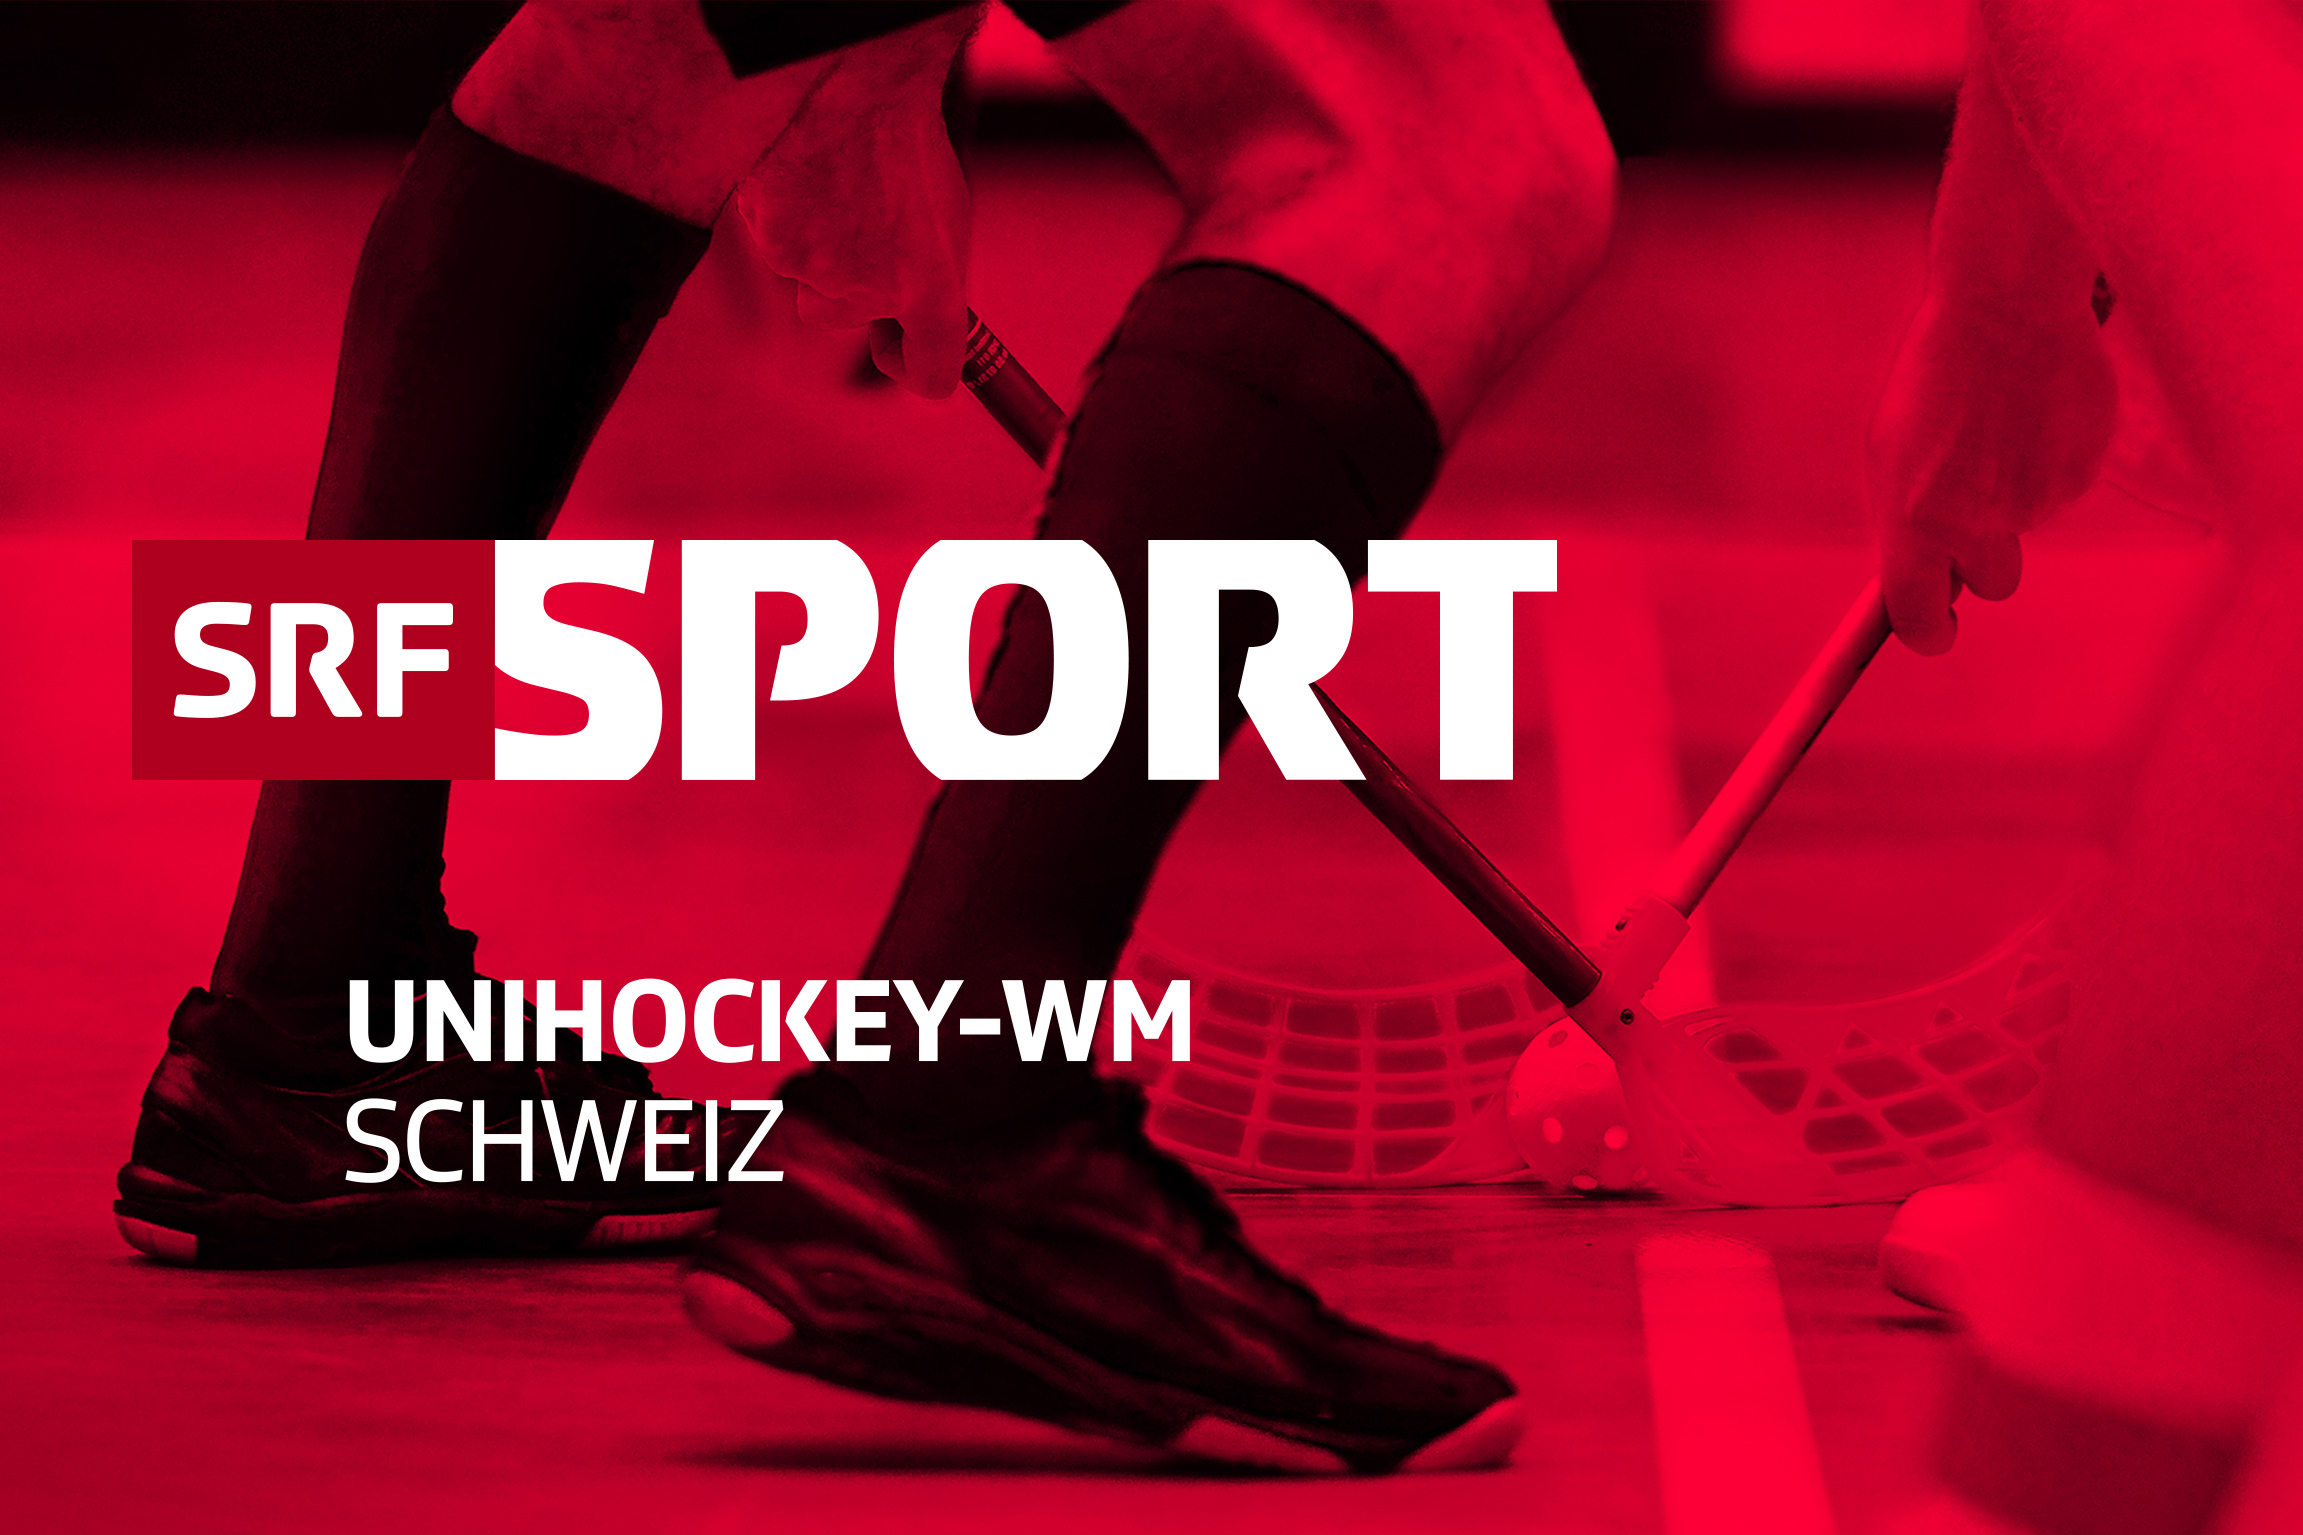 Unihockey-WM Schweiz Keyvisual 2022